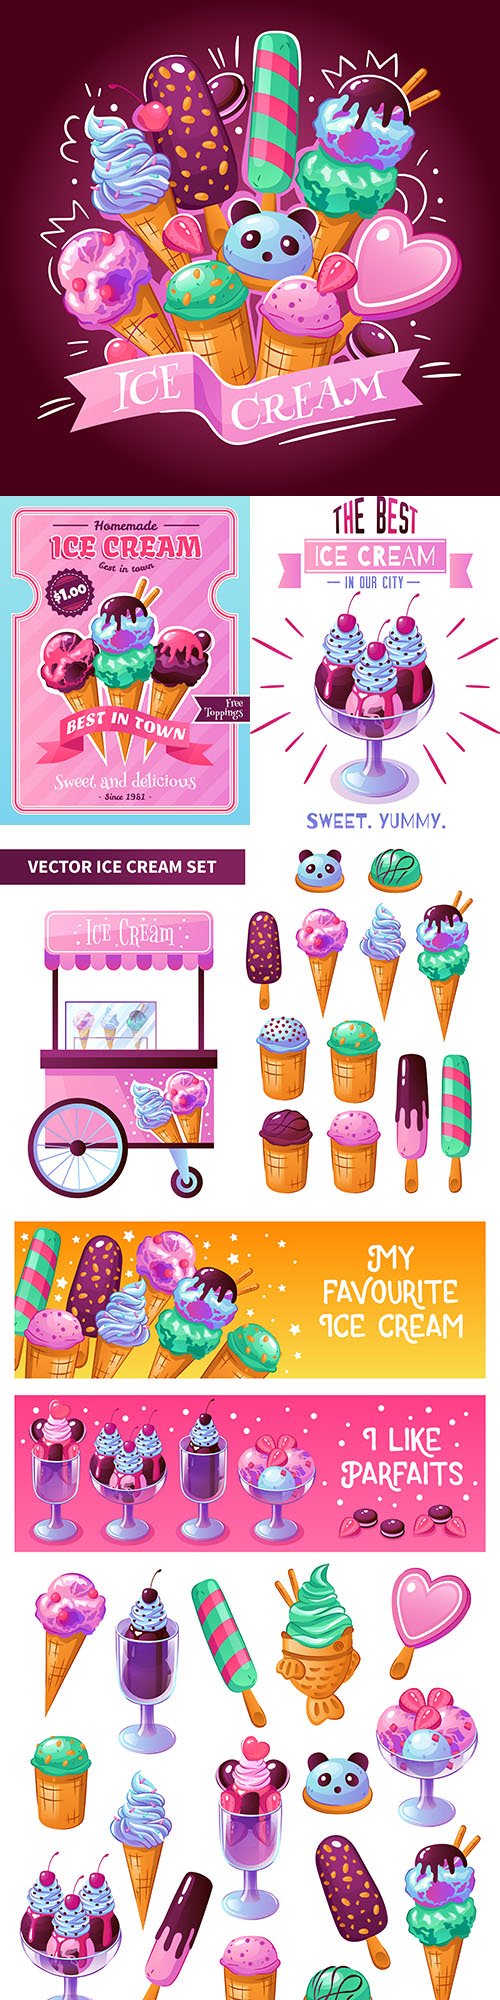 Ice cream delicious dessert decorative design emblem